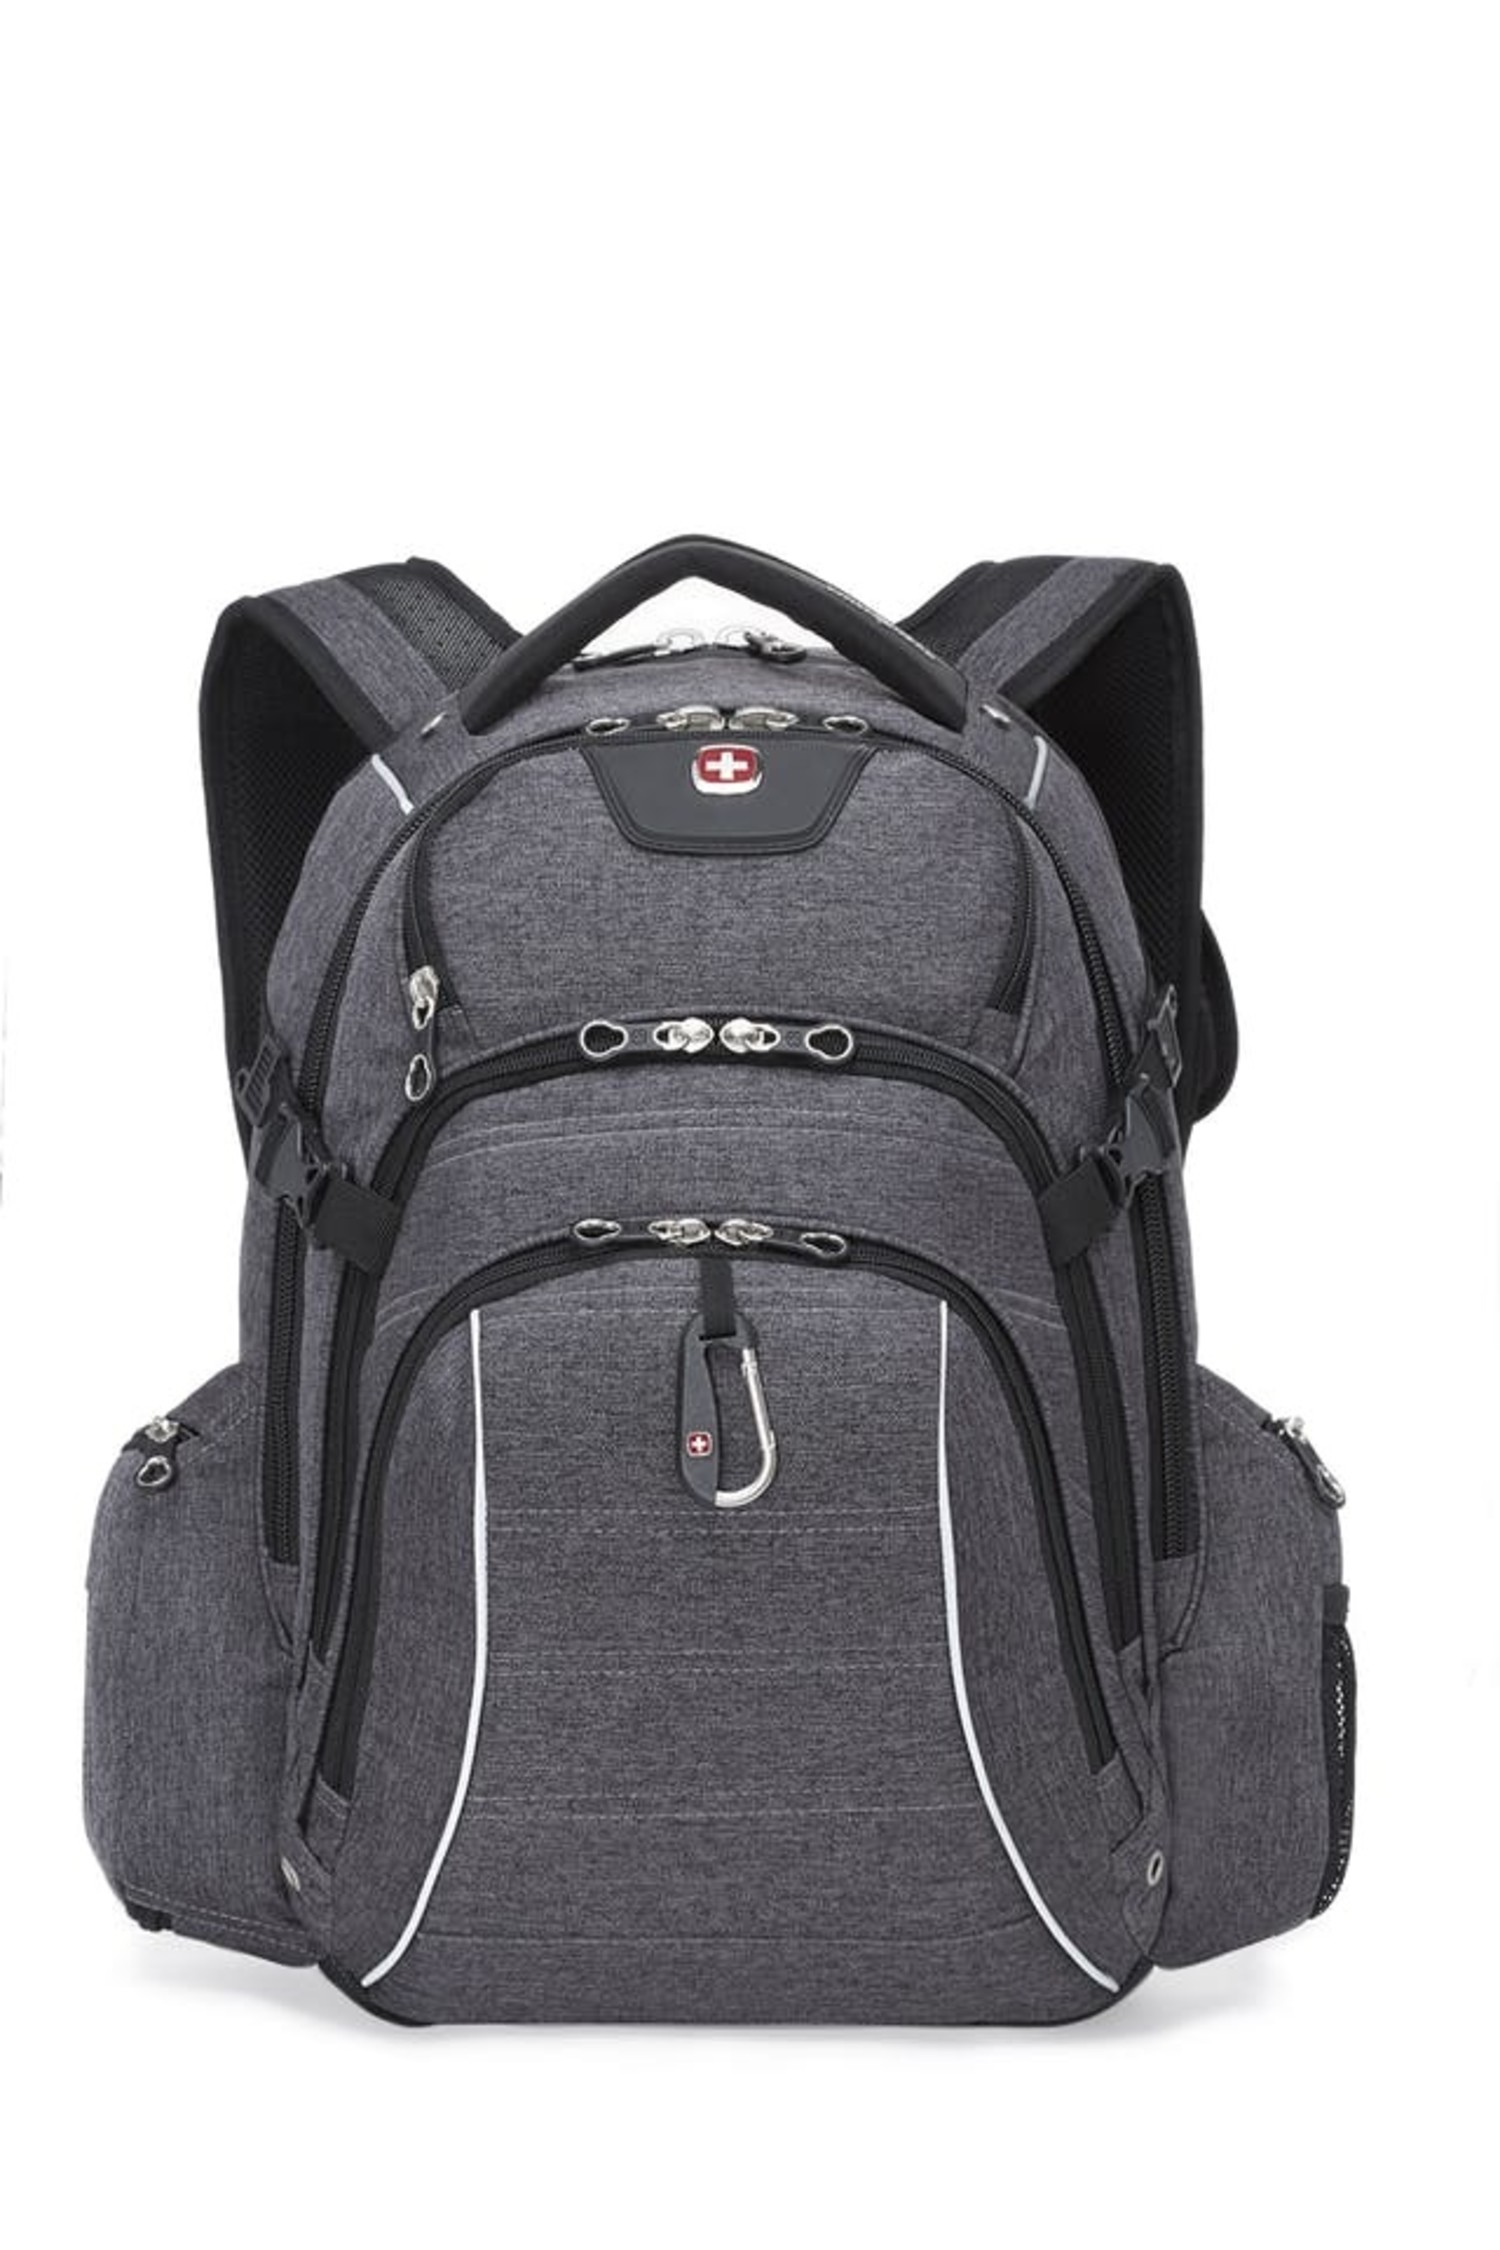 https://cdn.shoplightspeed.com/shops/642447/files/36357237/1500x4000x3/swiss-gear-swiss-gear-9855-17-computer-backpack-gr.jpg